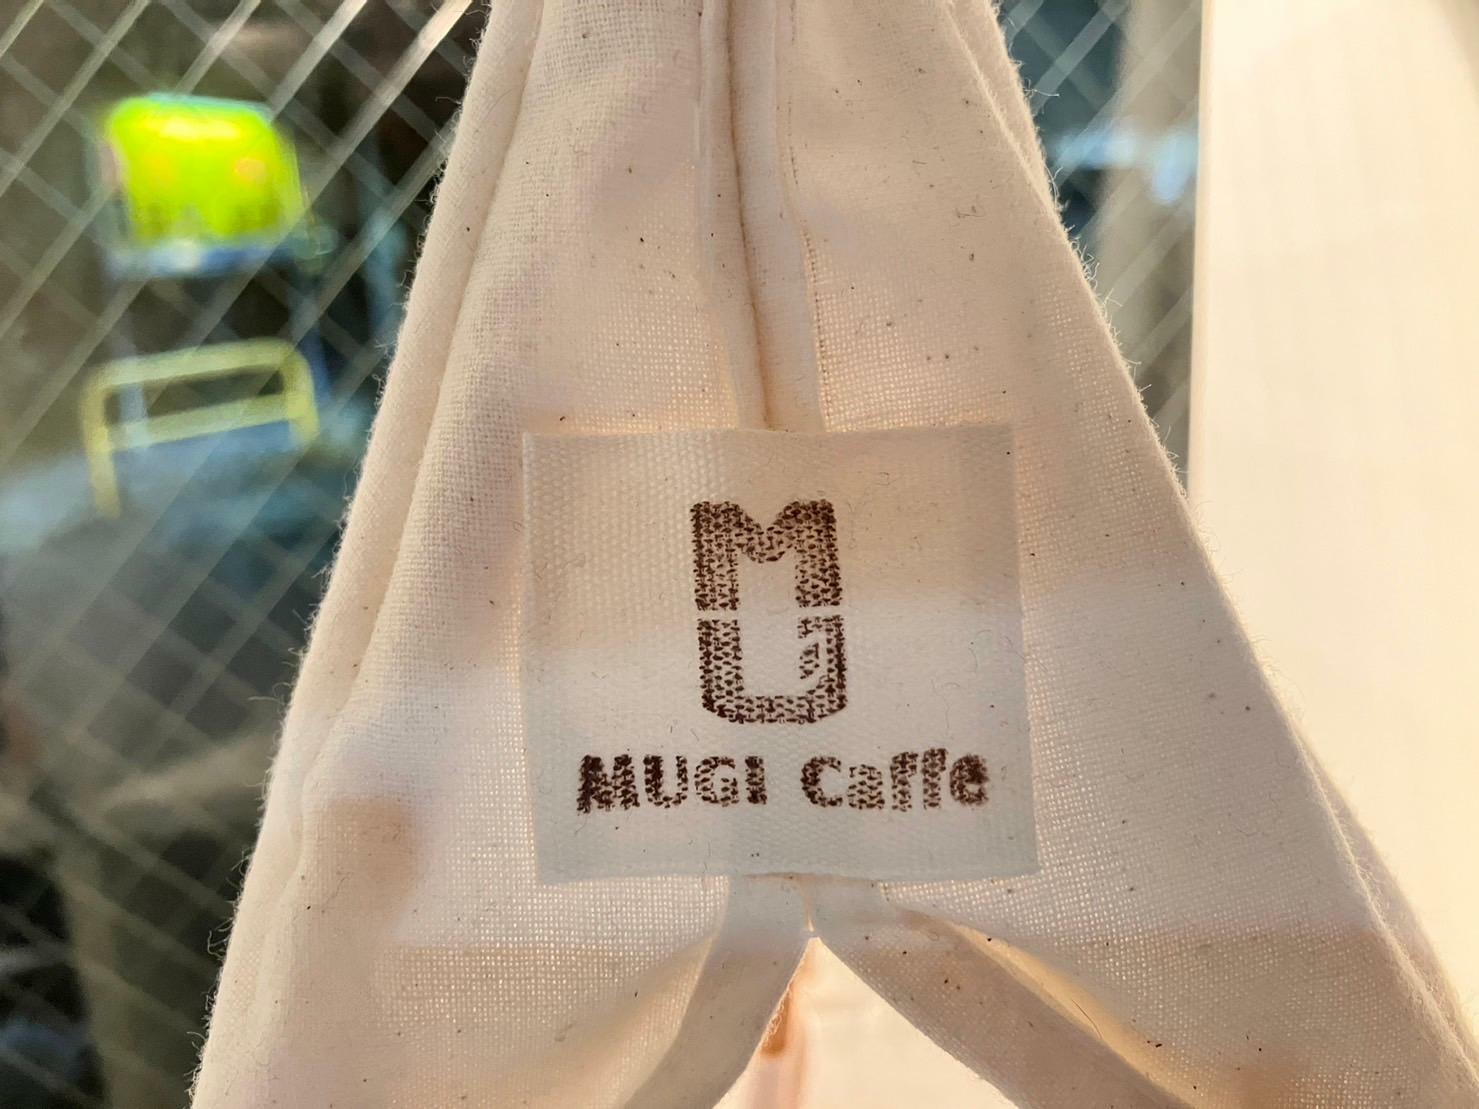 「MUGI Caffe」のロゴがプリントされています。店主さんのご友人のクリエイティブが至る所に！